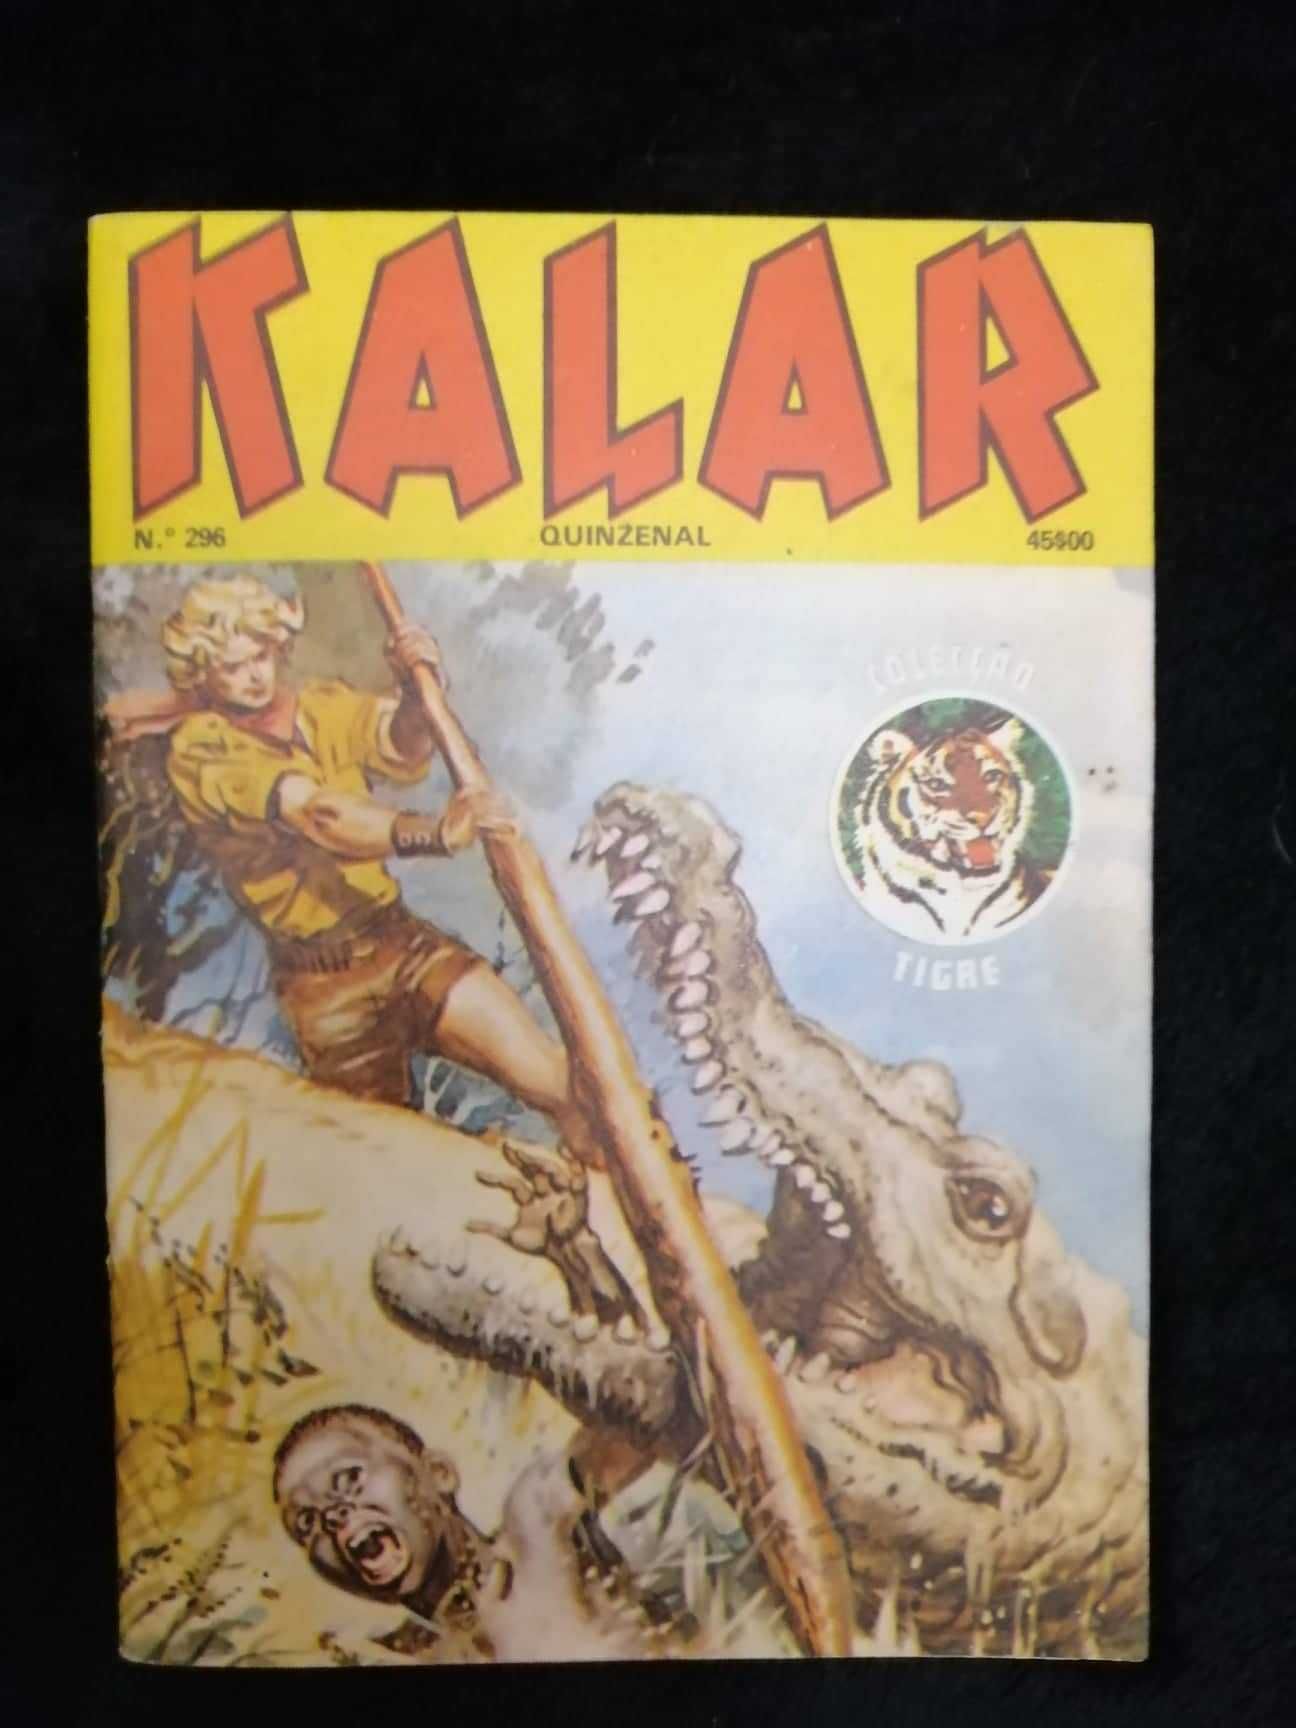 Livro de BD Kalar da coleção tigre " nº296 - bom estado